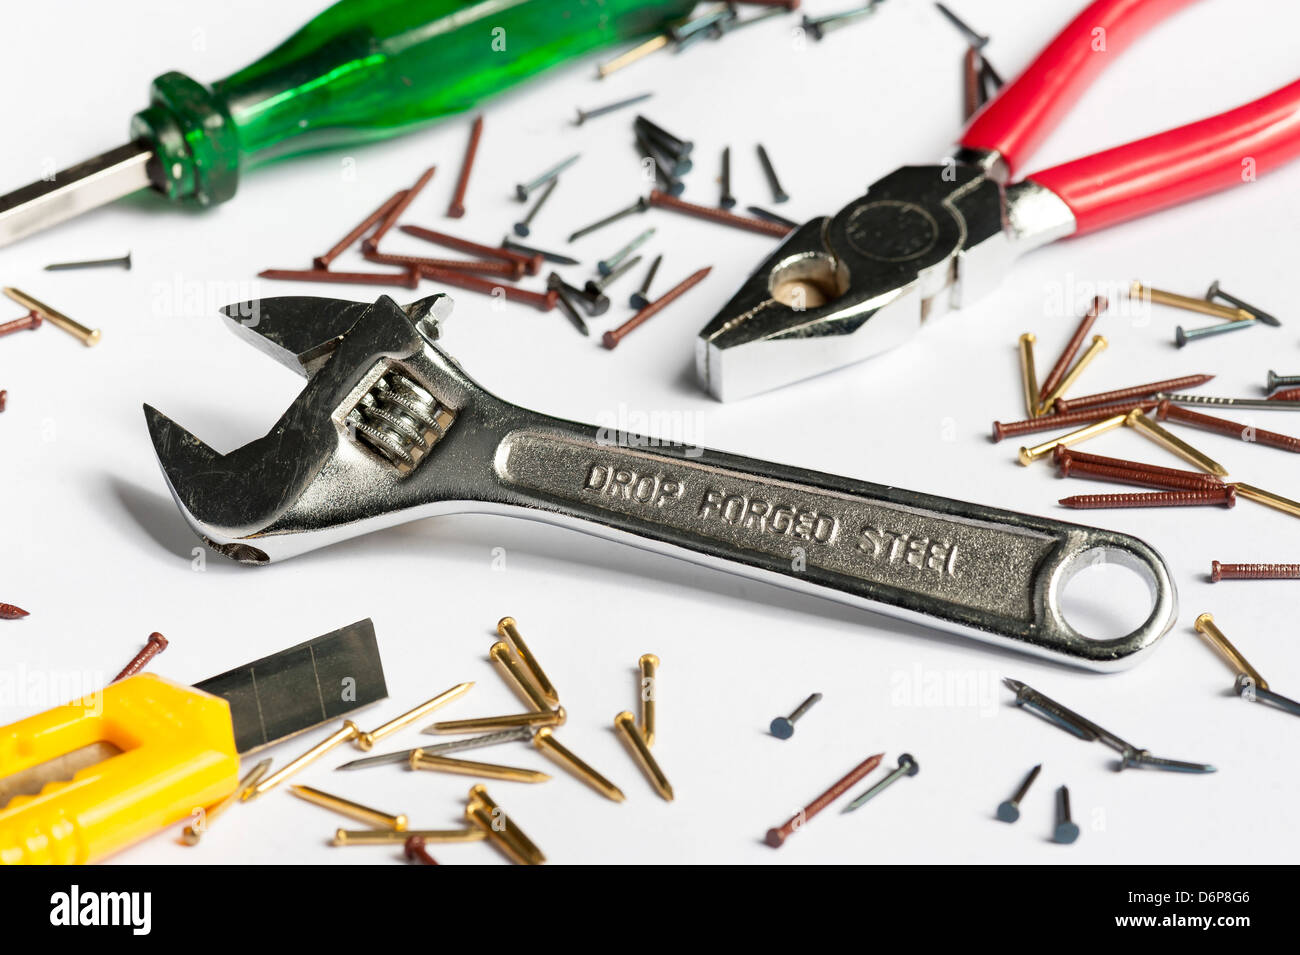 Schraubenschlüssel, Zangen, Schraubenzieher, Stanley-Messer und Nägel auf isolierte weiß. Schraubenschlüssel im Fokus, andere Werkzeuge leicht unscharf Stockfoto